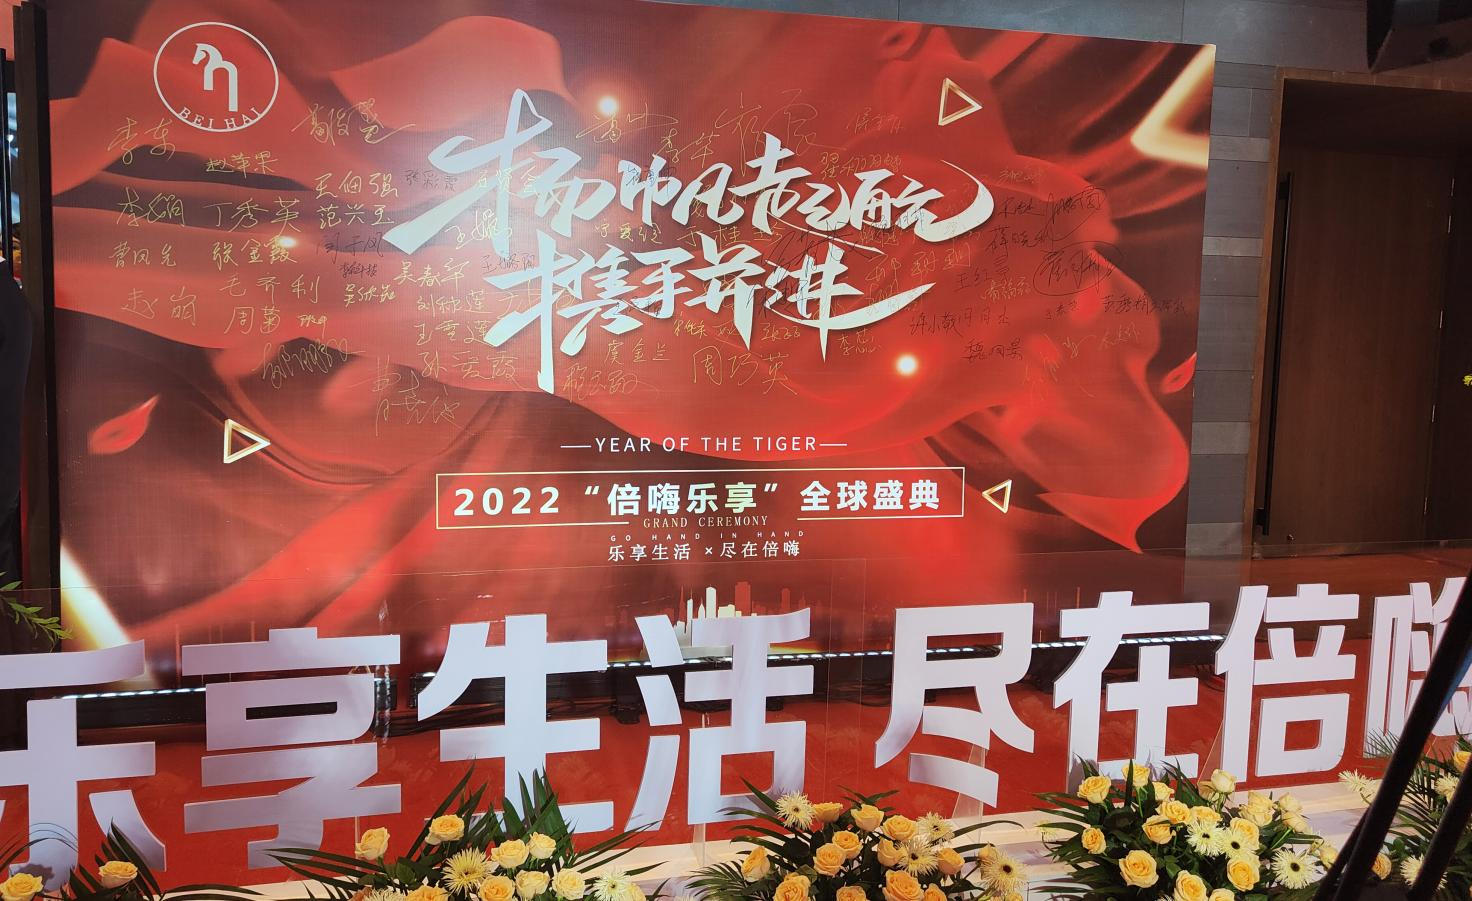 乐享生活 尽在倍嗨 2022“倍嗨乐享”正式上线发布会在郑州建业艾美酒店成功举办